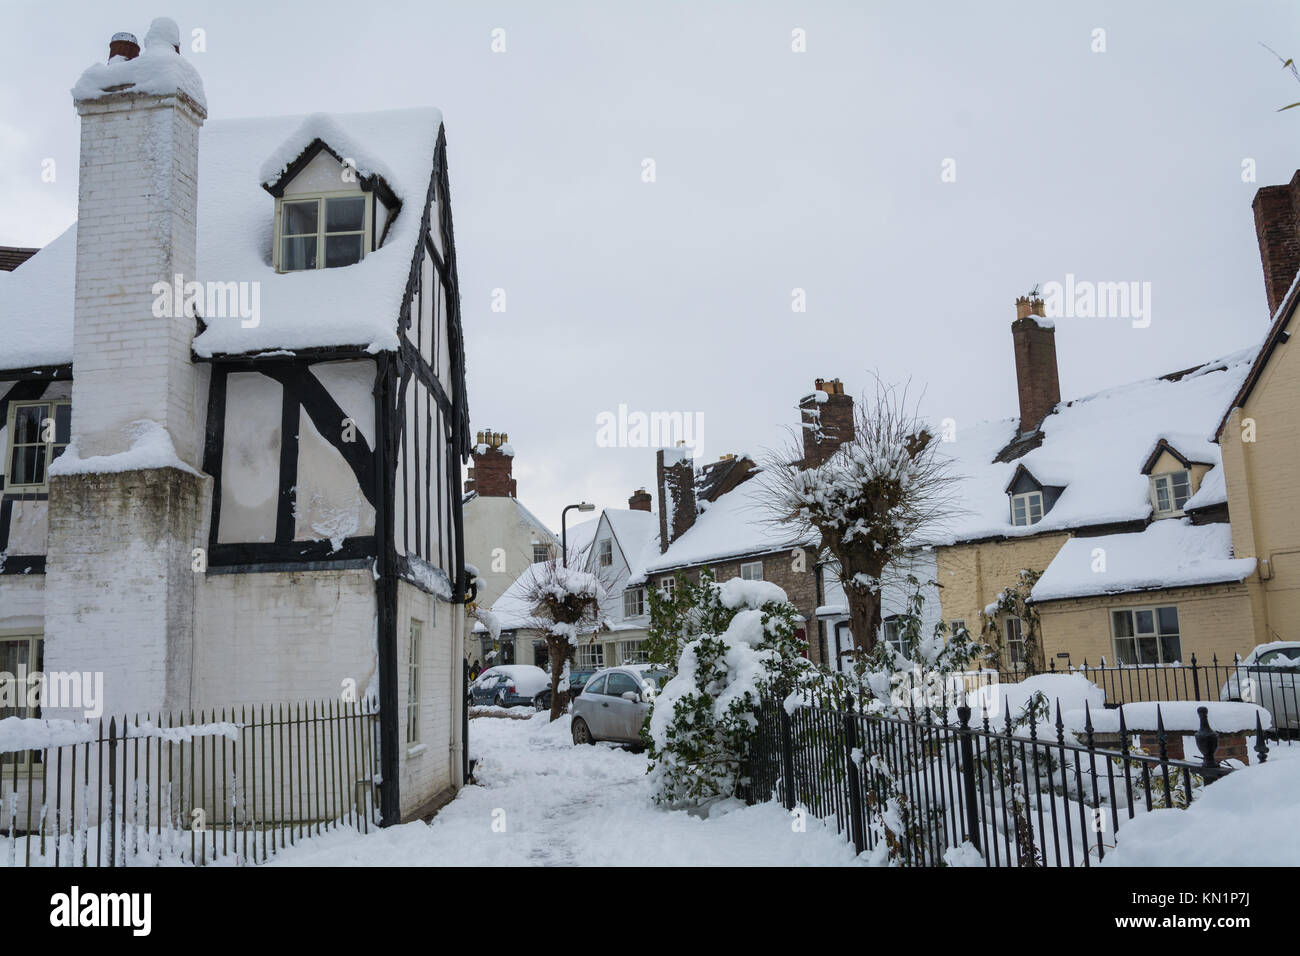 Un style Tudor cottage dans un cadre enneigé, la création d'une authentique ambiance de Noël. Much Wenlock, Shropshire, au Royaume-Uni. Banque D'Images